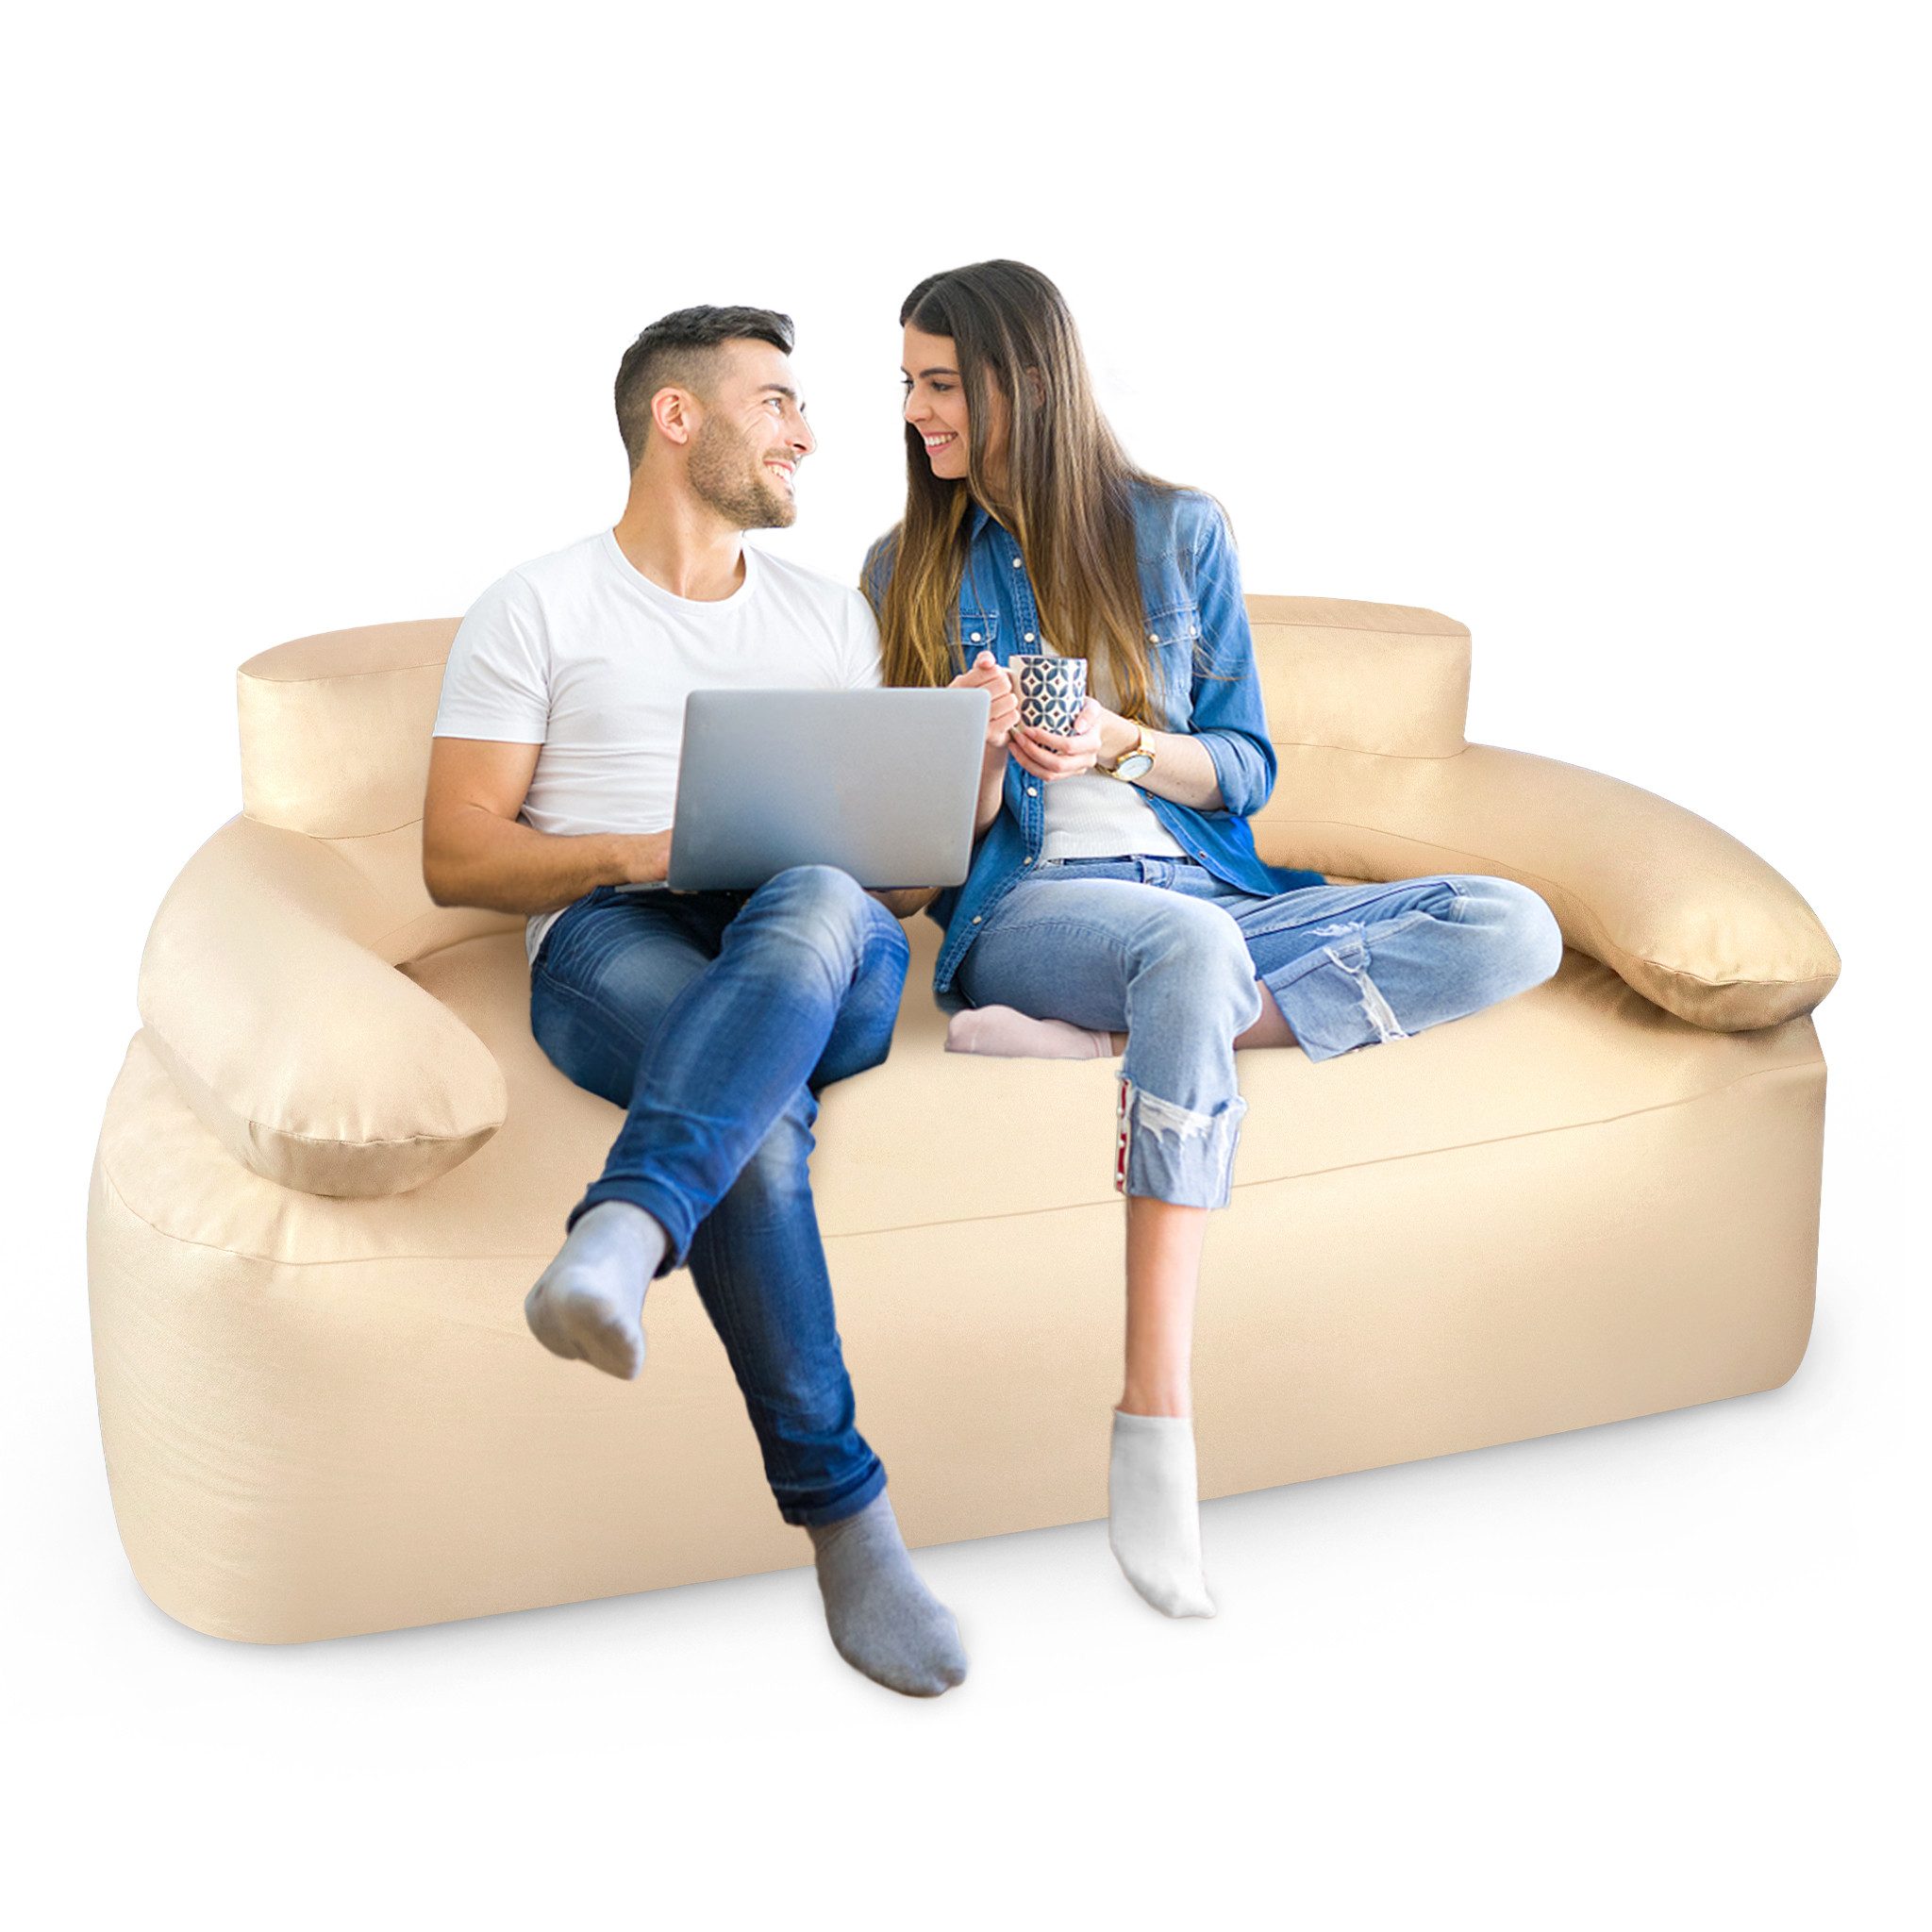 AUFUN Luftsofa Aufblasbares Sofa mit Rückenlehnen und Armlehnen, Khaki, Einfache Lagerung